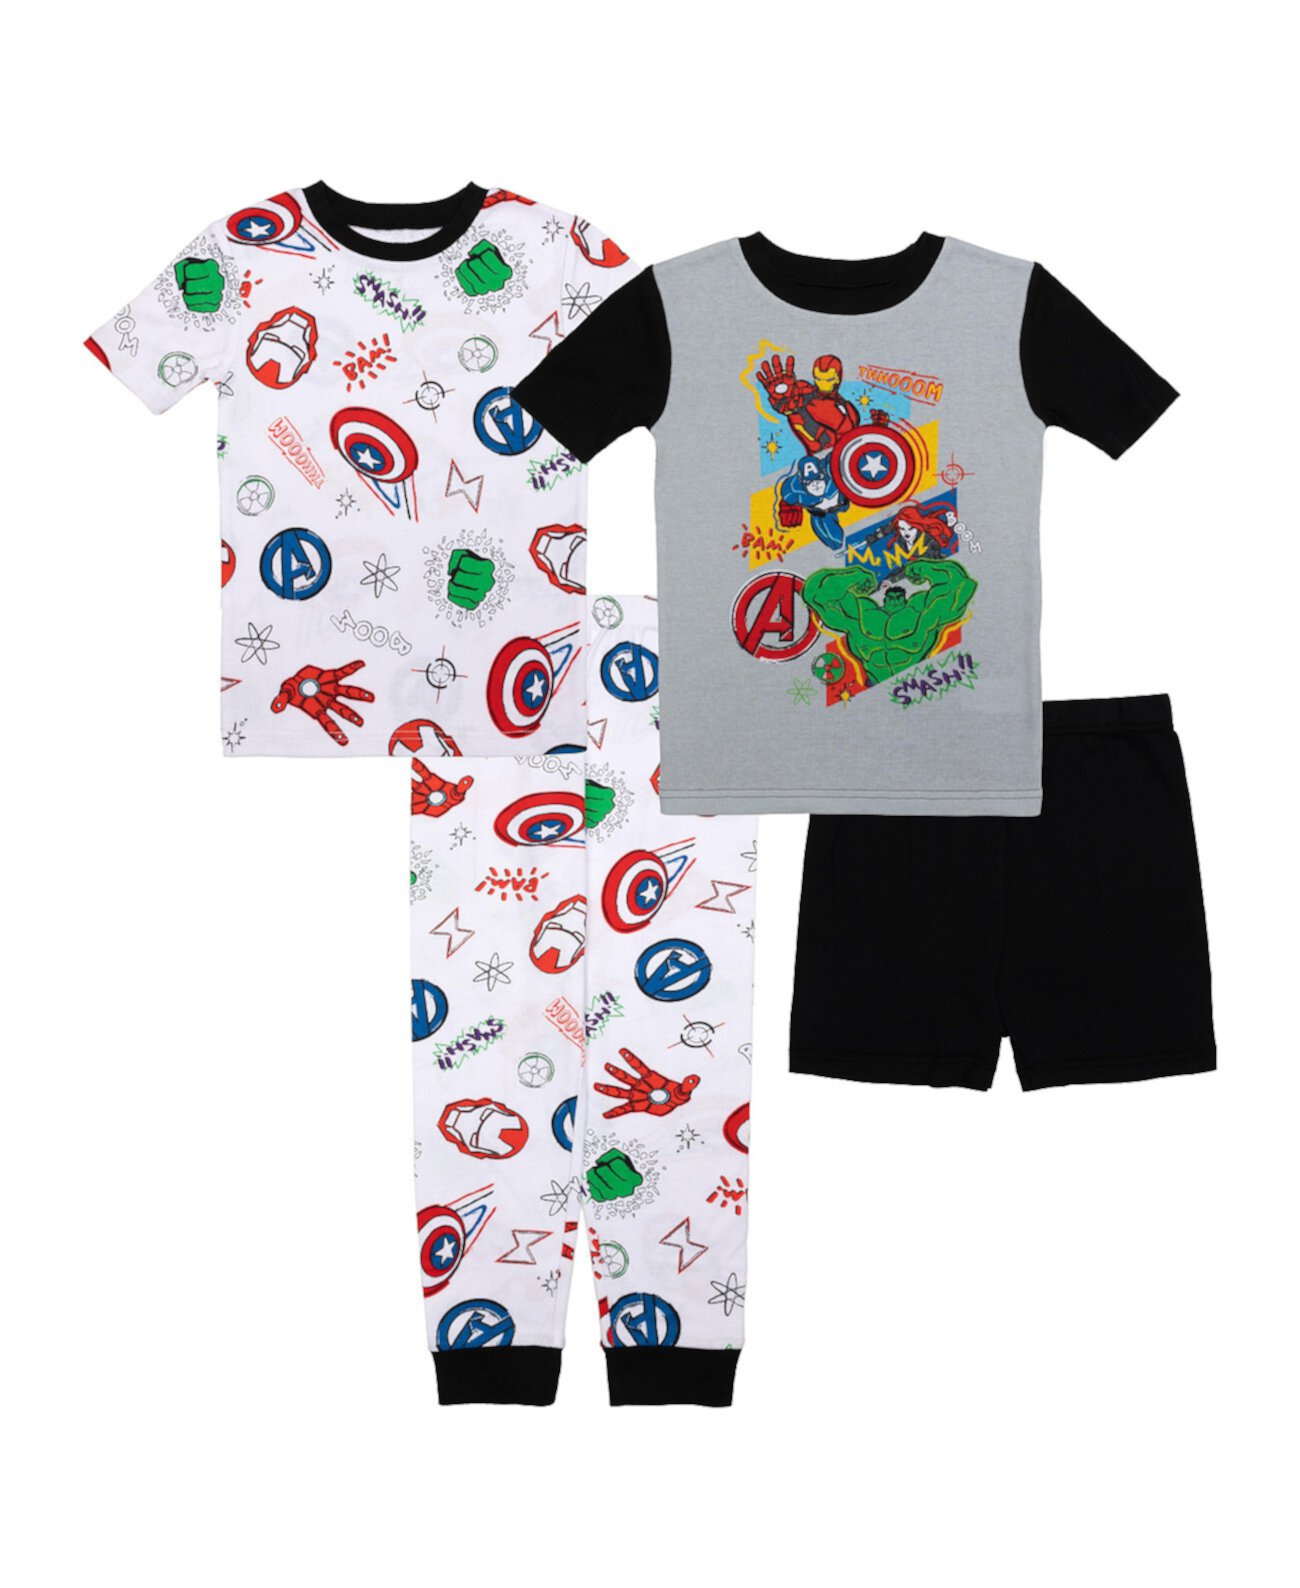 Хлопковый пижамный комплект из 4 предметов для больших мальчиков Avengers